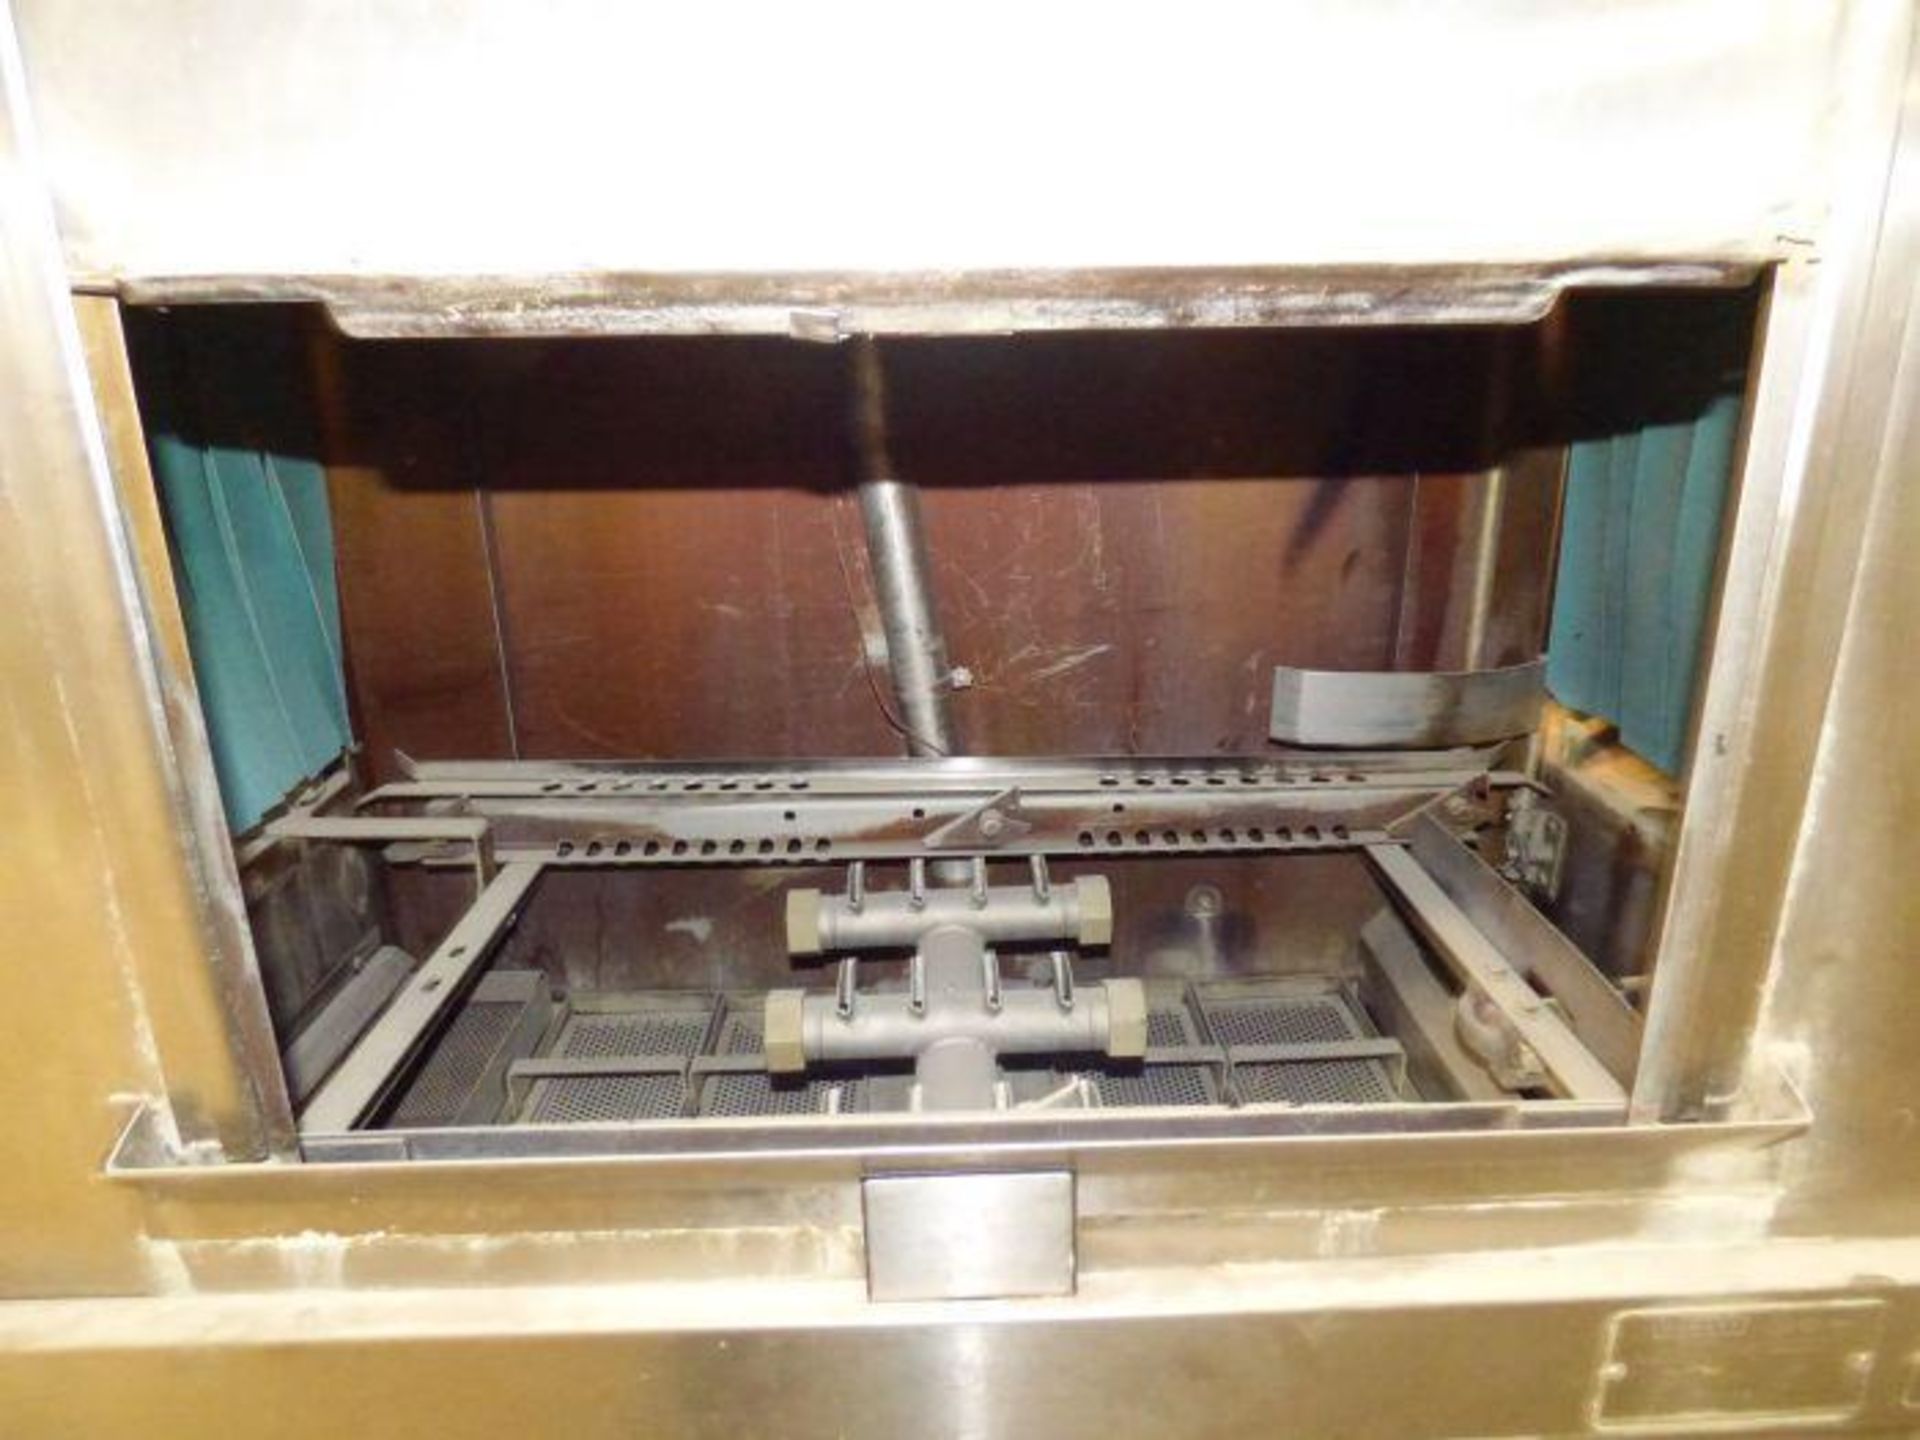 Hobart Conveyor Dishwasher - Image 4 of 7